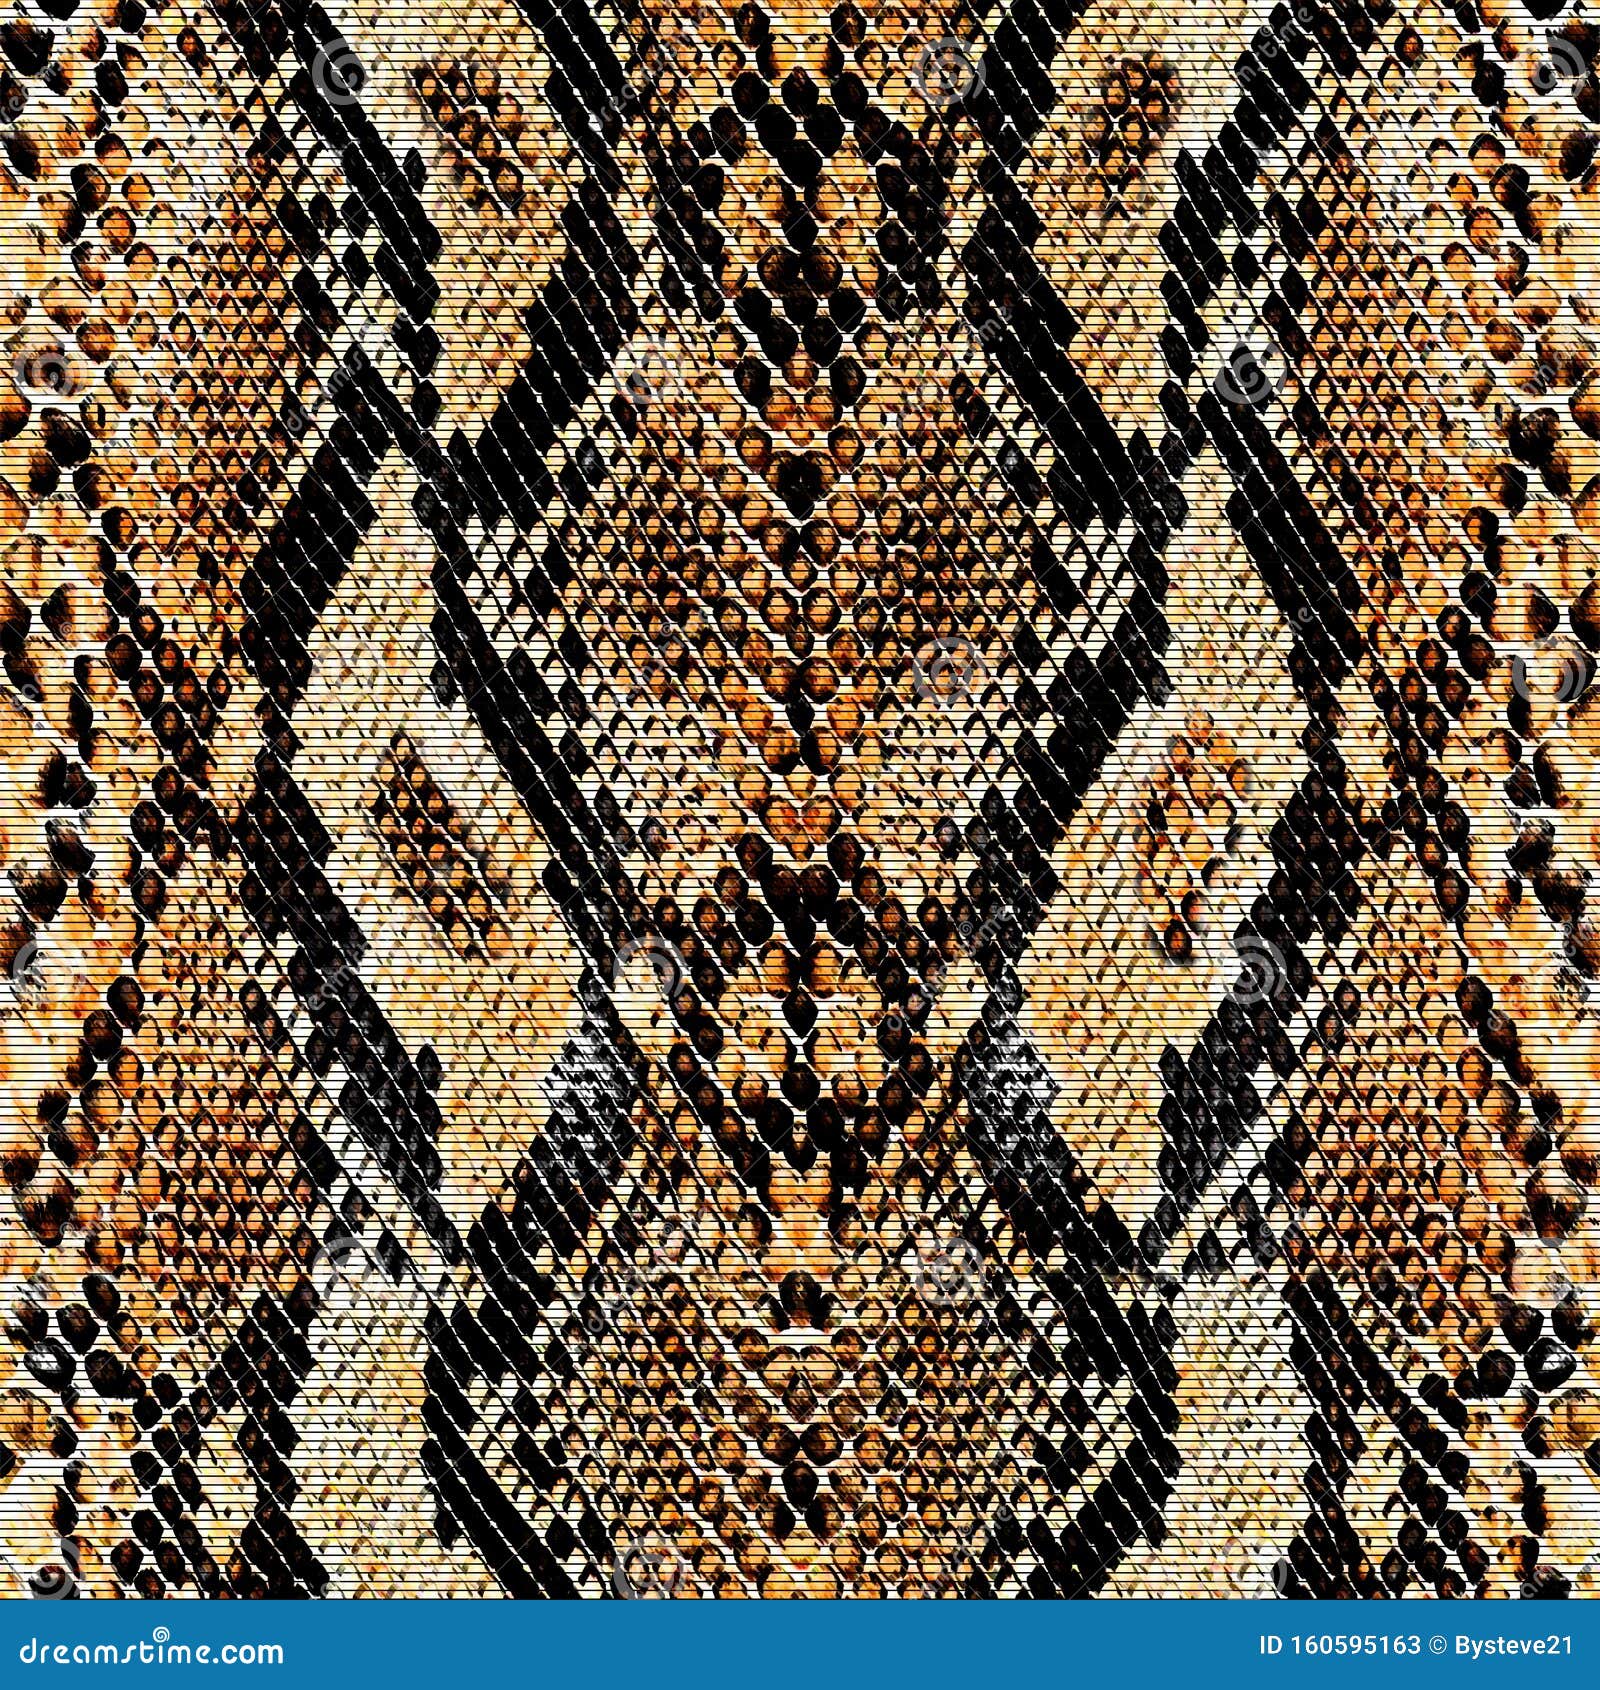 snake skin pattern